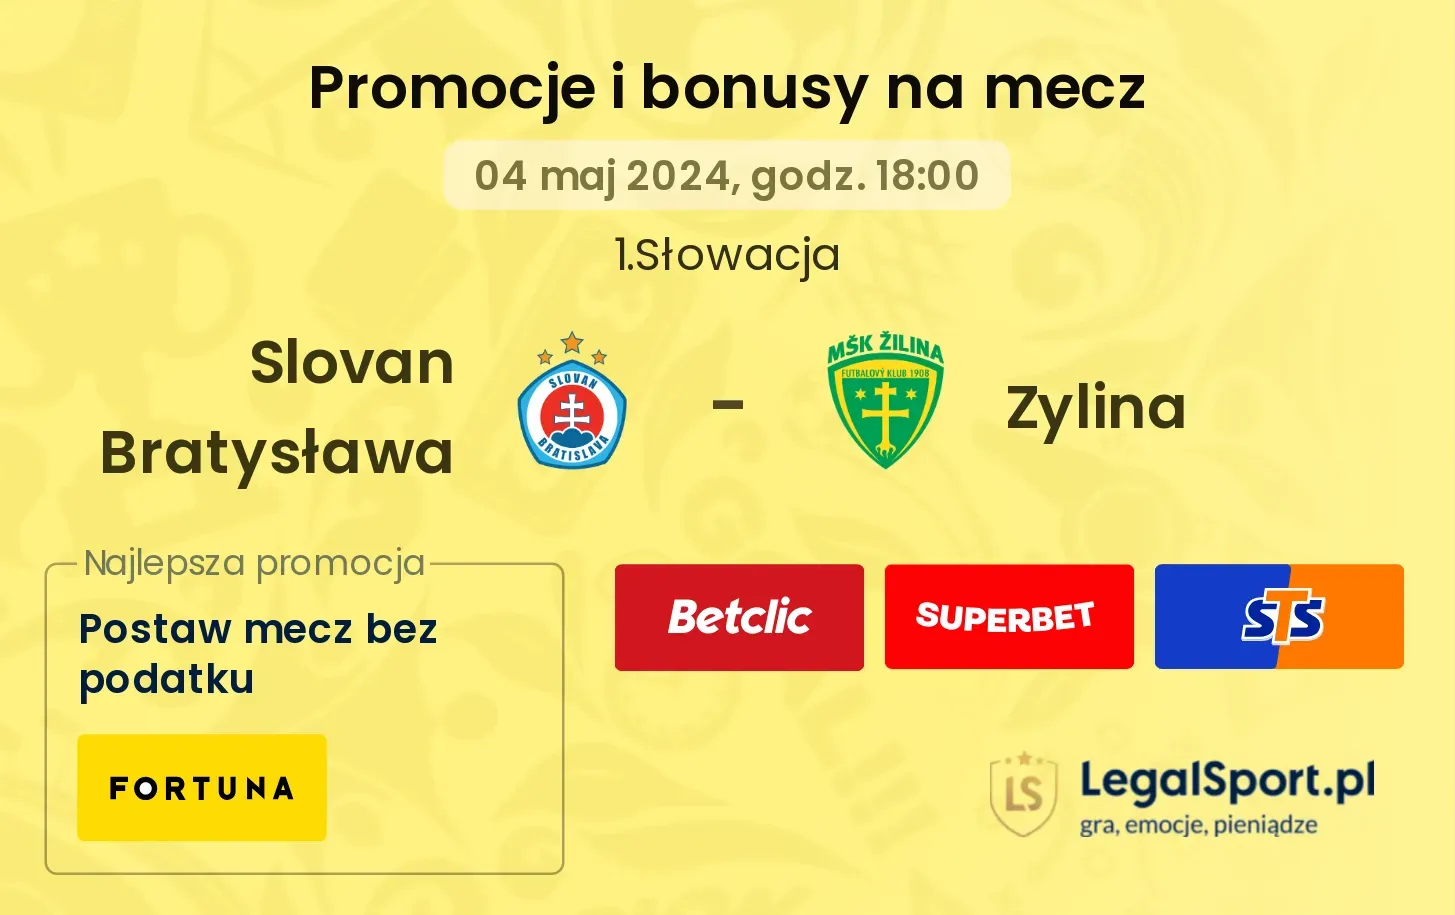 Slovan Bratysława - Zylina promocje bonusy na mecz